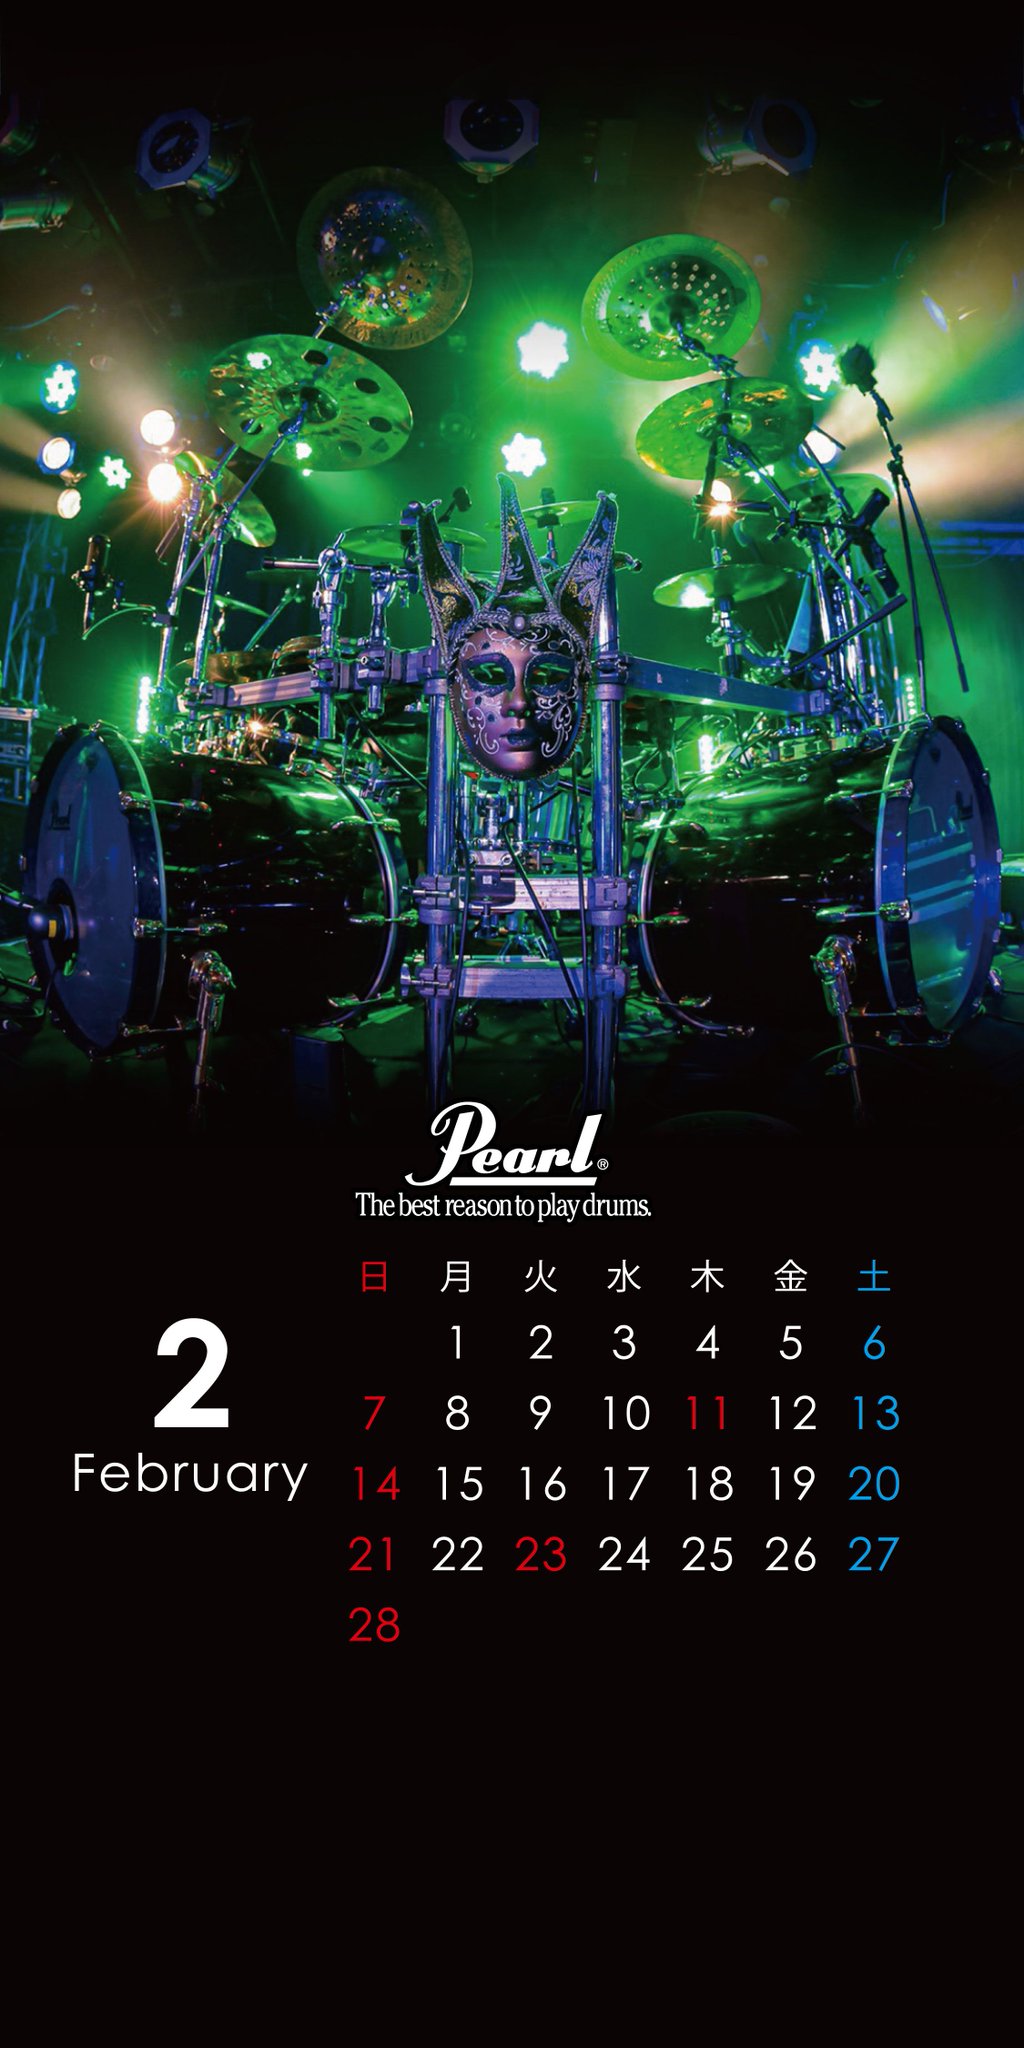 パール楽器製造株式会社 En Twitter スマホ壁紙2月 今月は アーティスト ドラムセット をカレンダーにしたスマホ壁紙を配信致します 2月はネロさん Nerorythem のドラムセットです